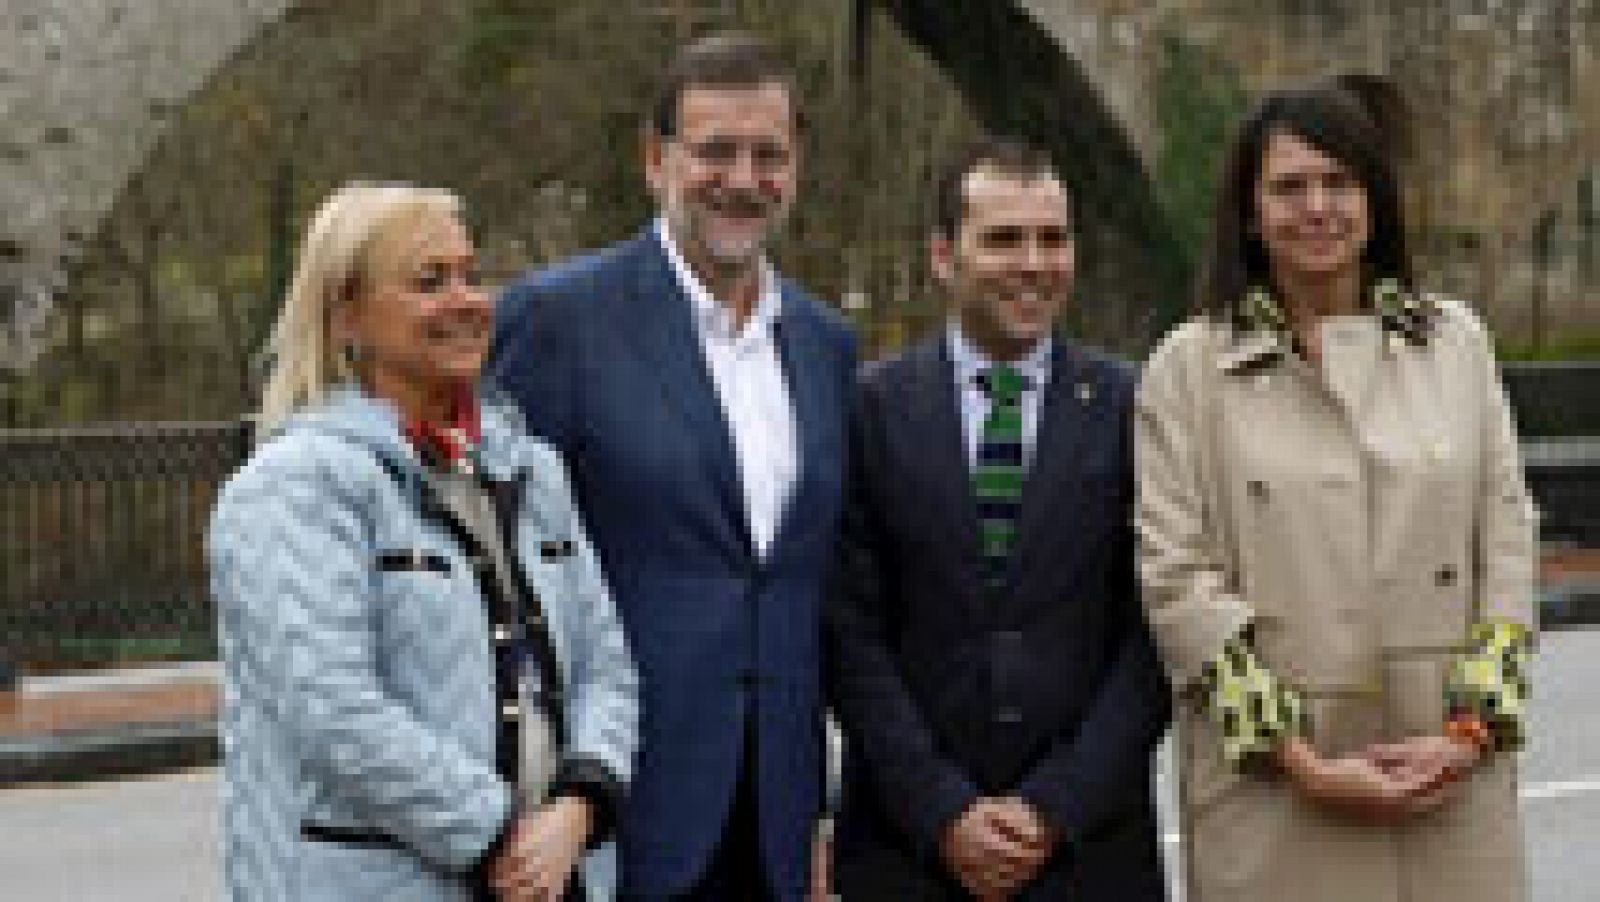 Elecciones generales 2015: Rajoy: "Frente al PP lo único que hay es una coalición de izquierdas que no conviene"